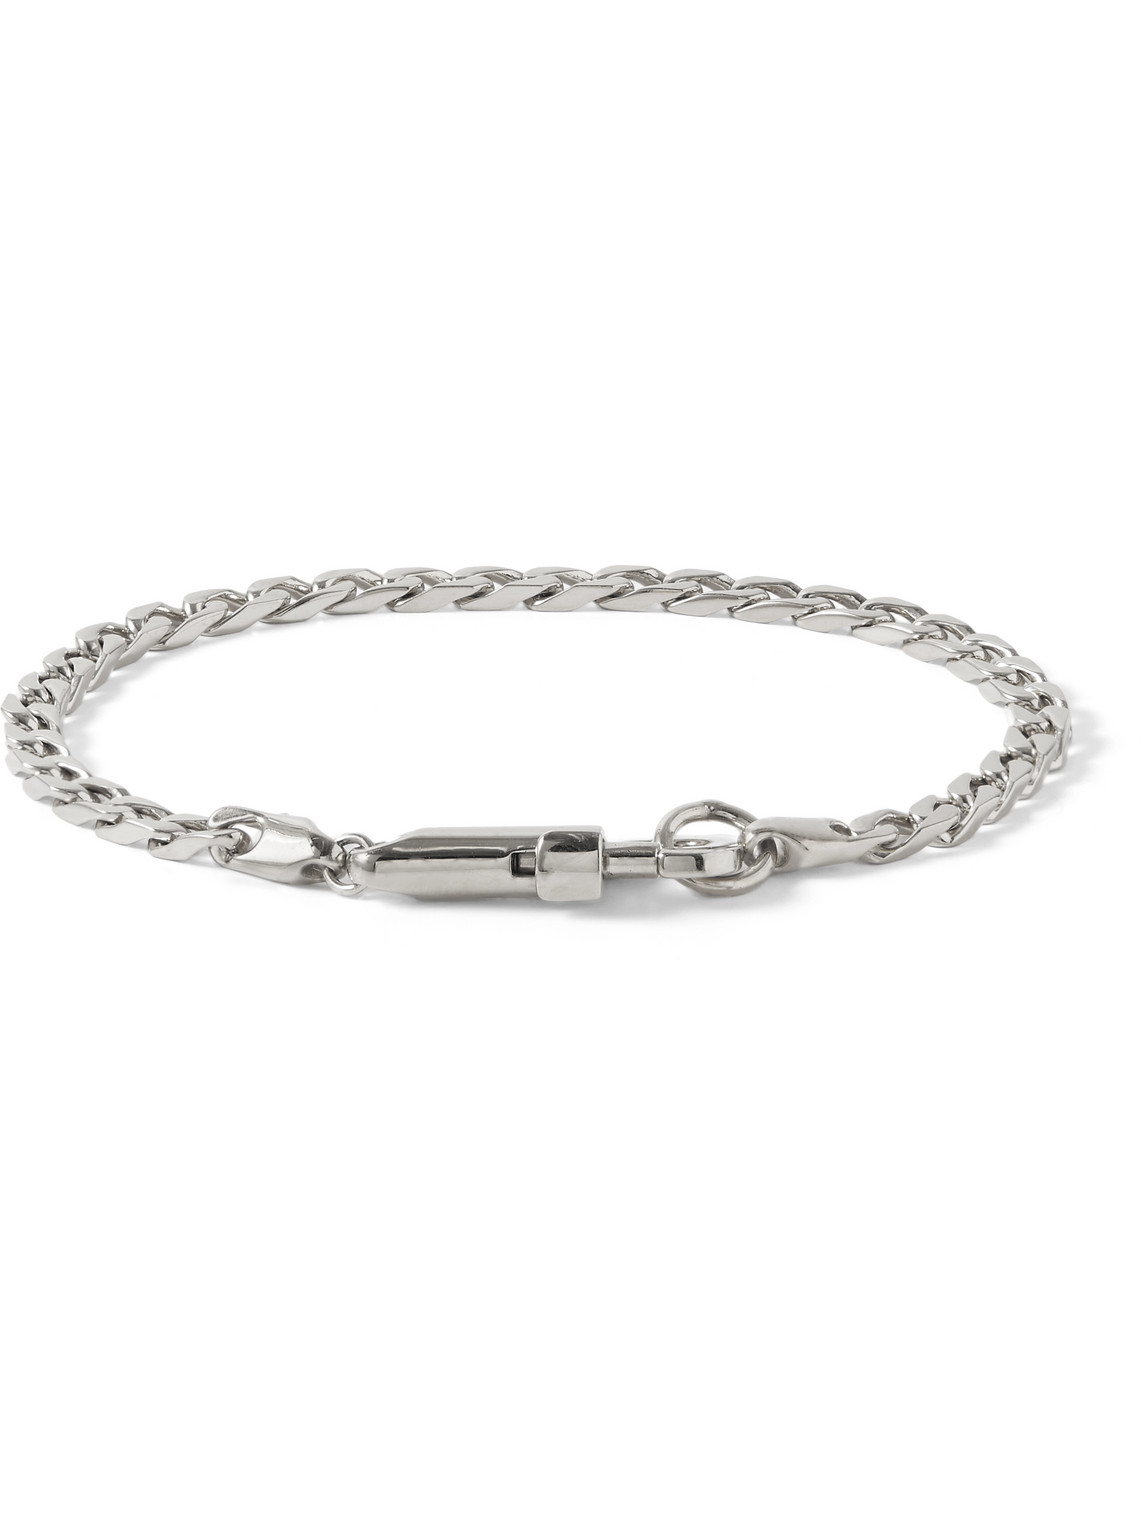 Miansai Snap Silver Chain Bracelet